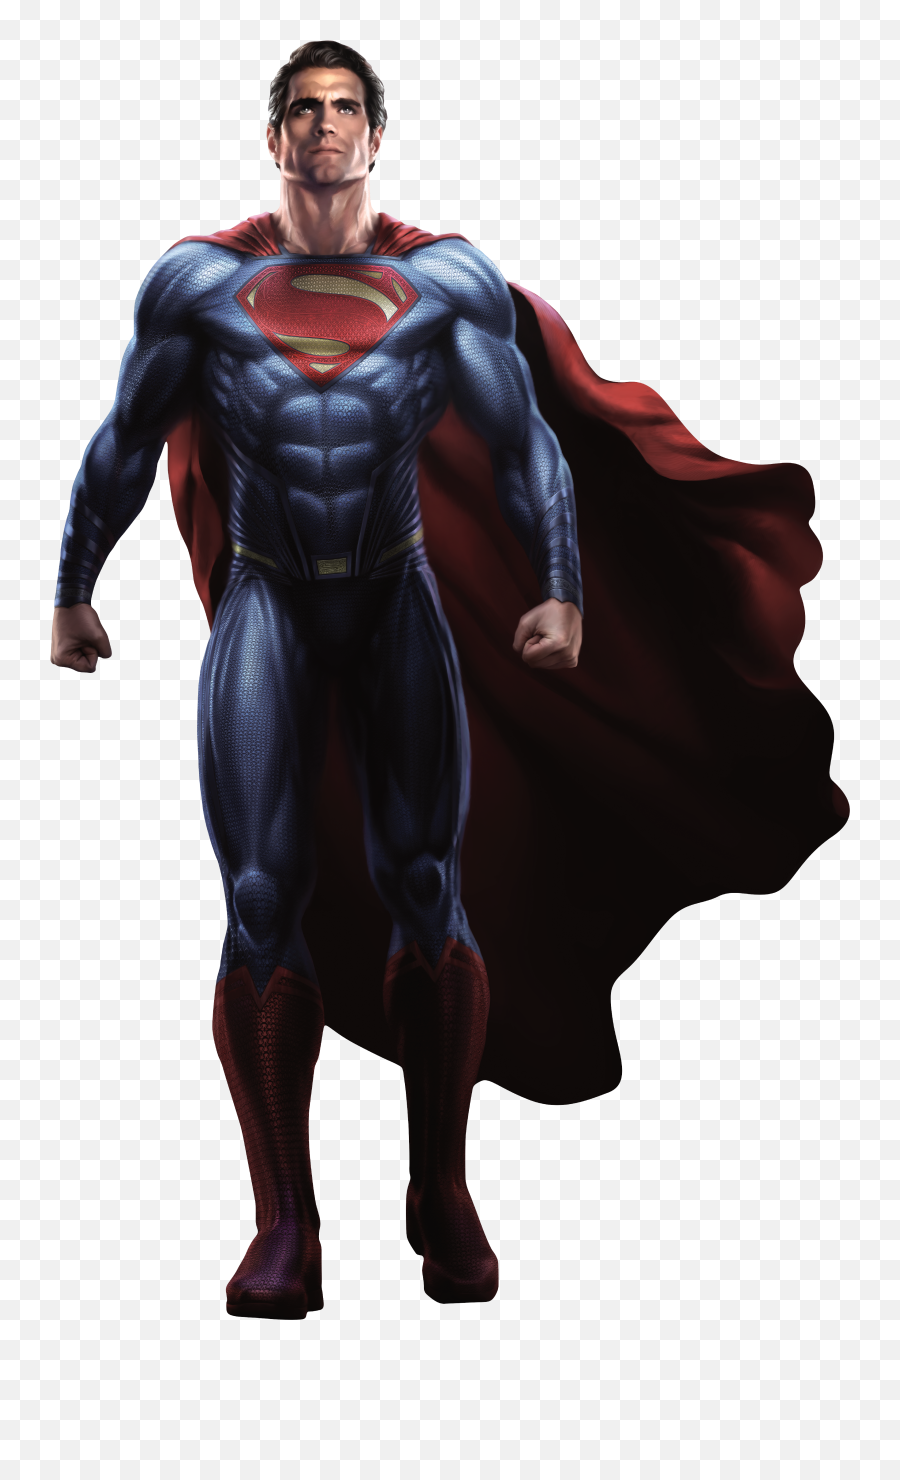 Hd Wallpaper Backgrounds Download - Super Man Hd Png,Superman Logo Hd